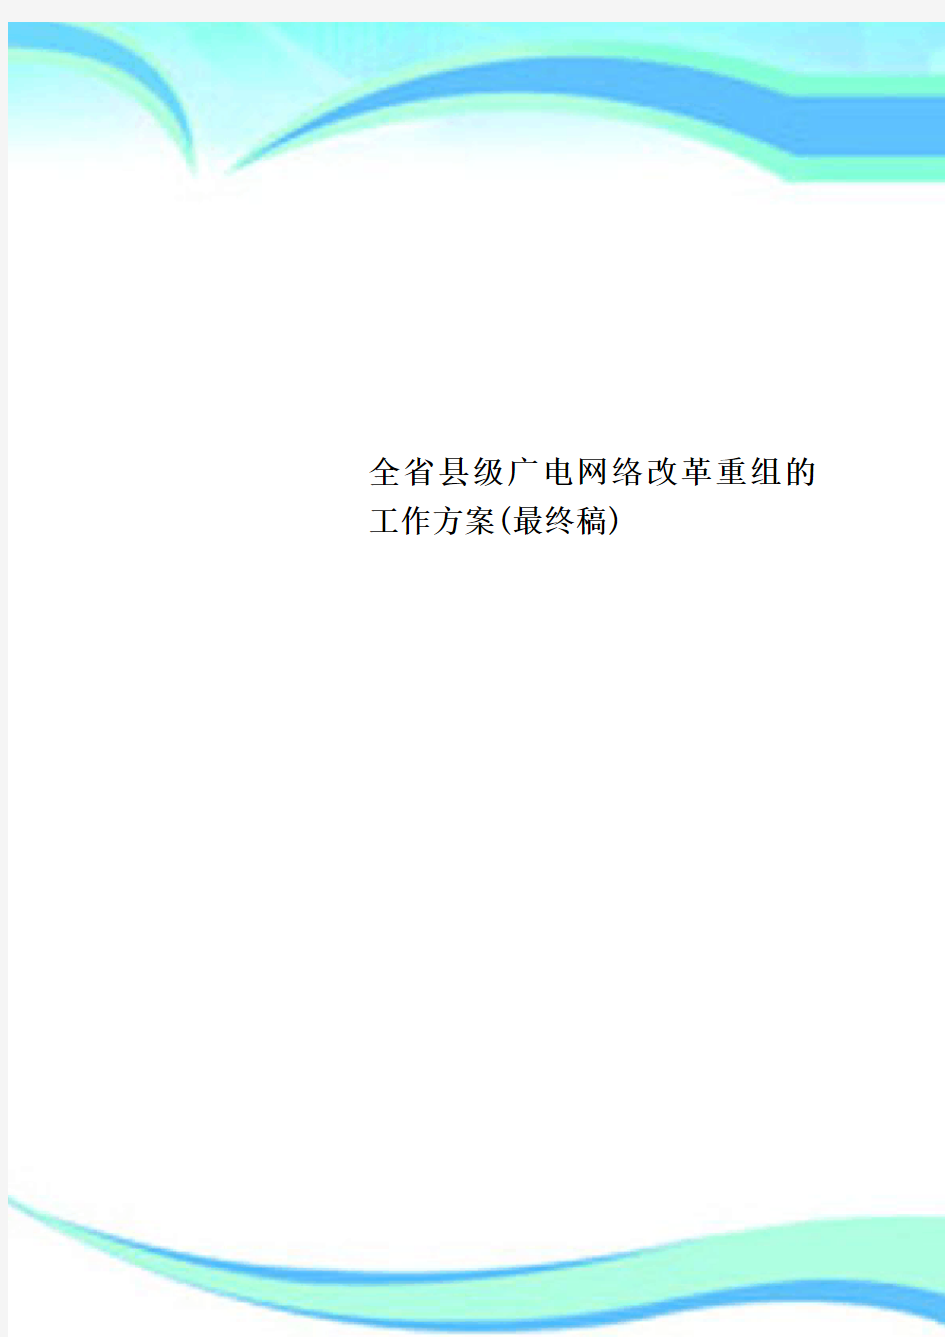 全省县级广电网络改革重组的工作实施方案(最终稿)